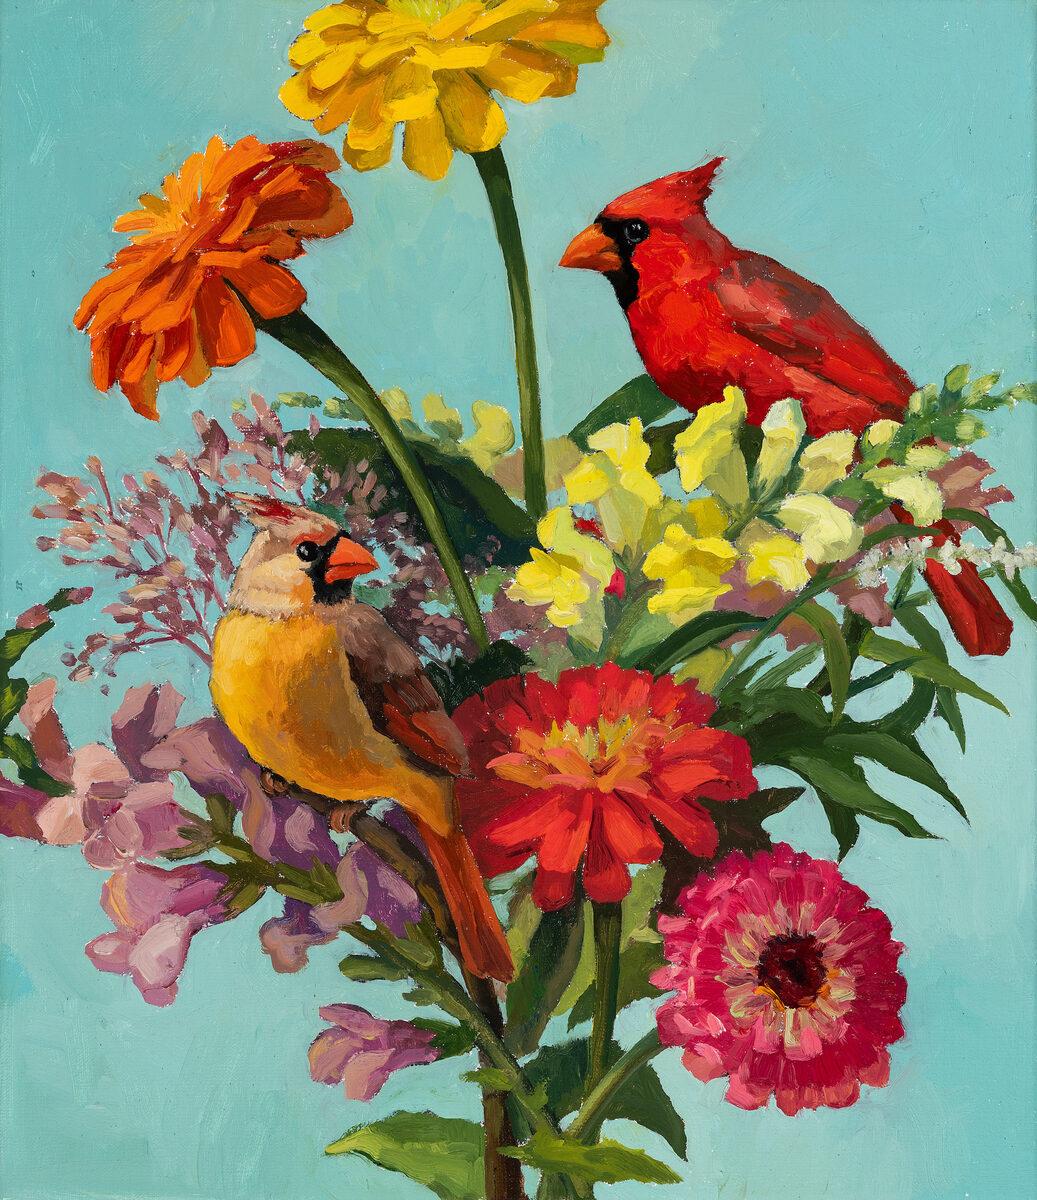 Landscape Painting Edwina Lucas - Deux oiseaux assis parmi des fleurs colorées « Cardinal Rule »